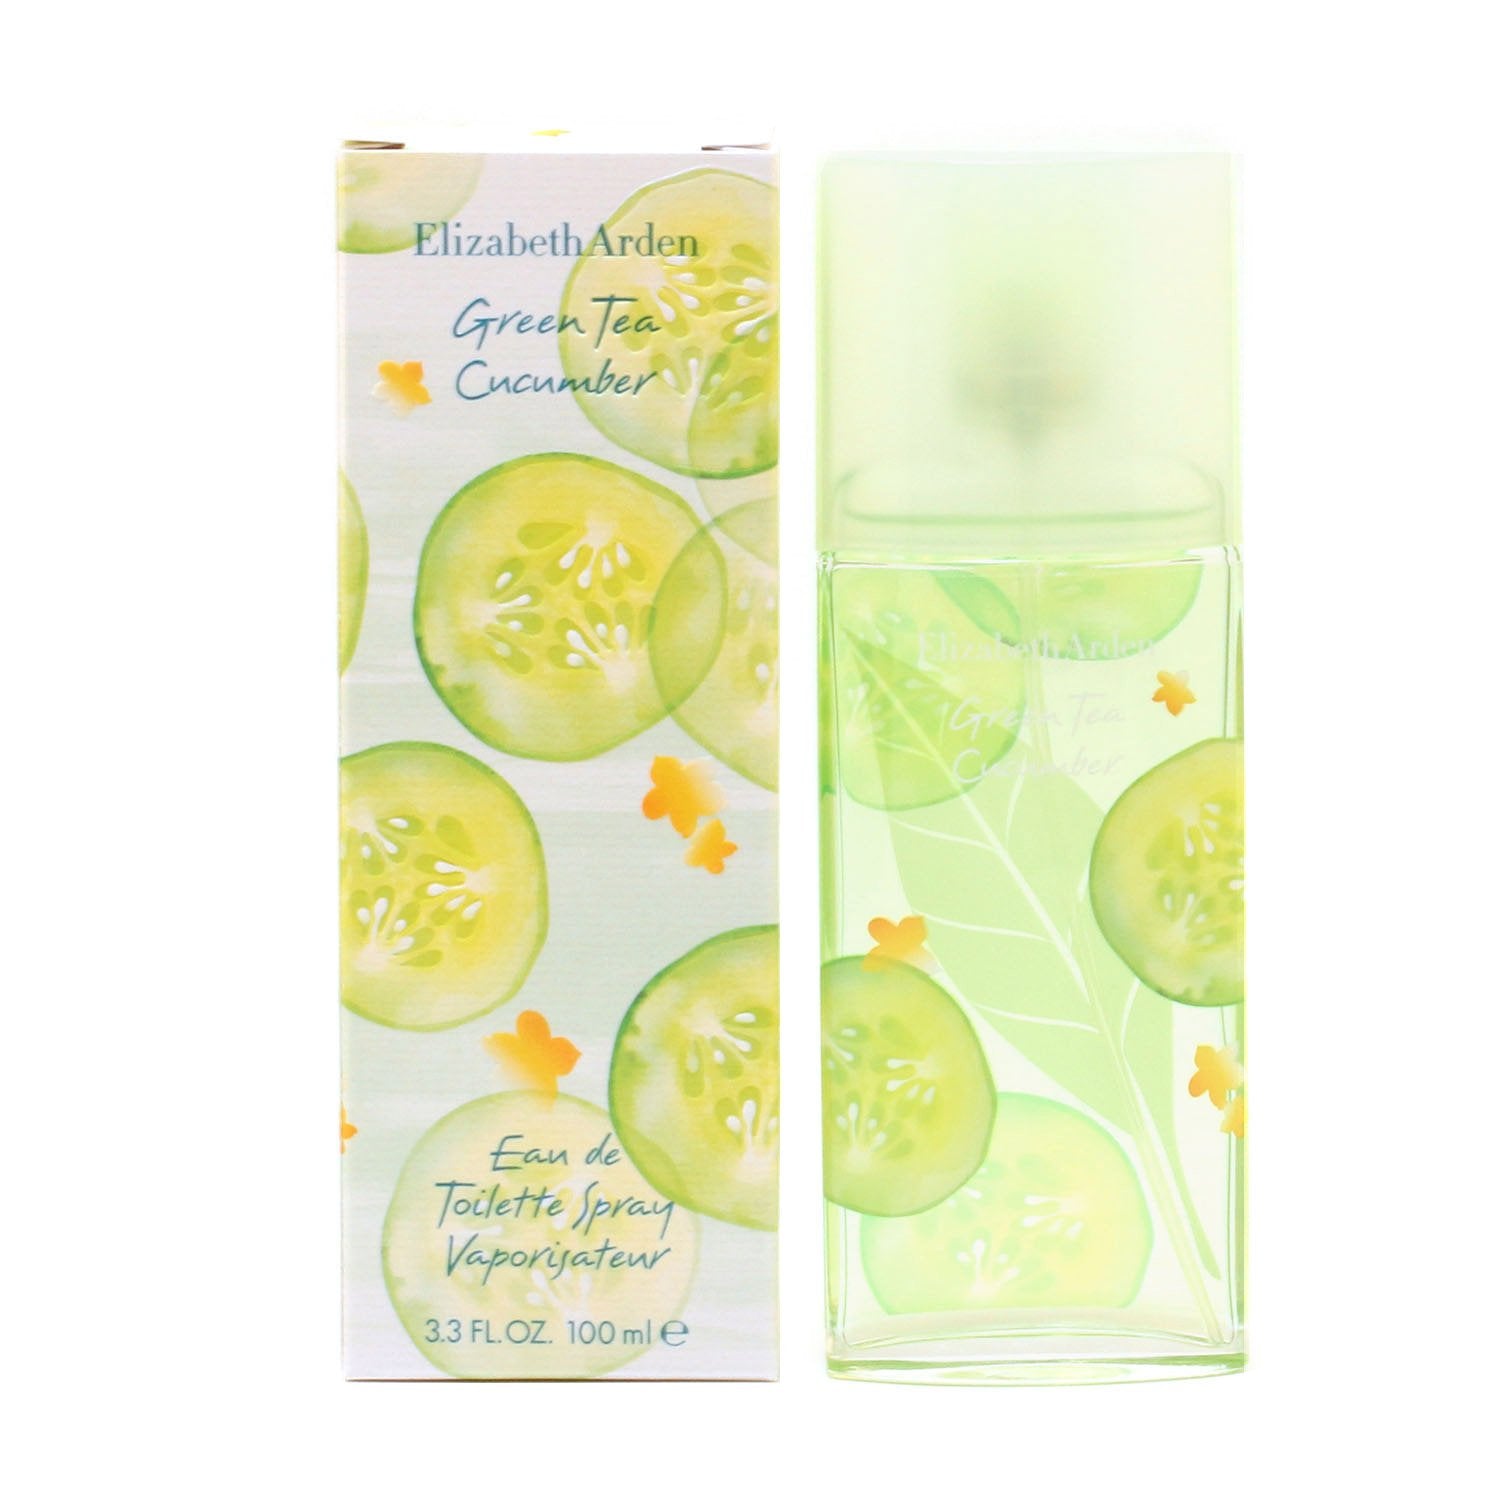 GREEN TEA CUCUMBER FOR WOMEN BY SPRA Room ELIZABETH - – EAU DE ARDEN TOILETTE Fragrance